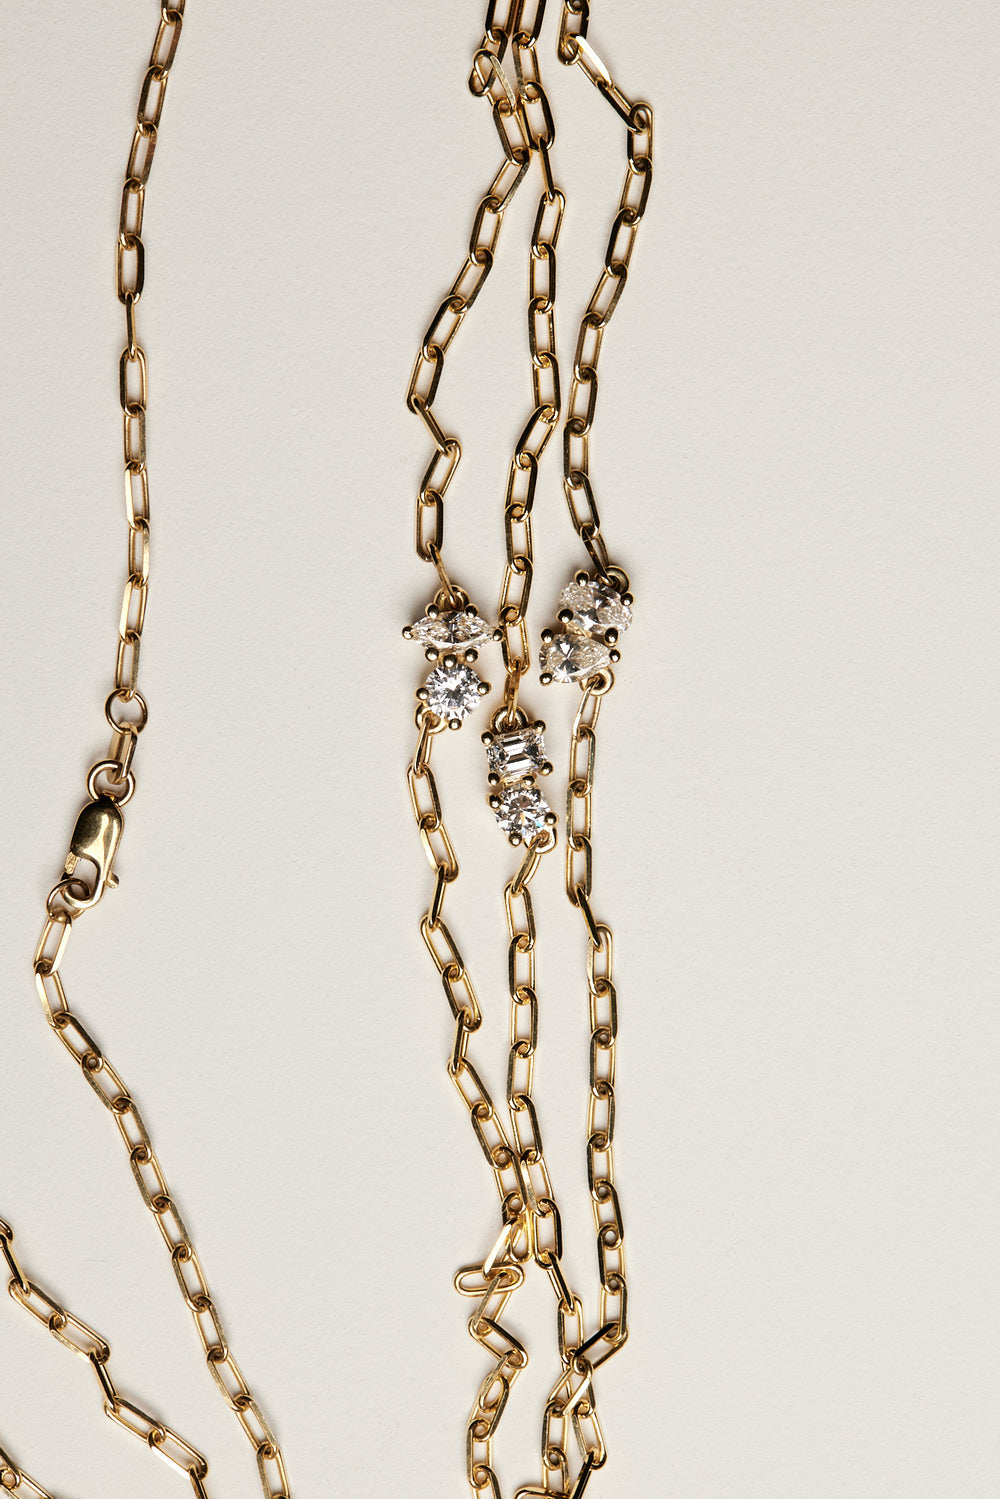 Emerald and Round Diamond Toi Et Moi Necklace | 18K White Gold| Natasha Schweitzer